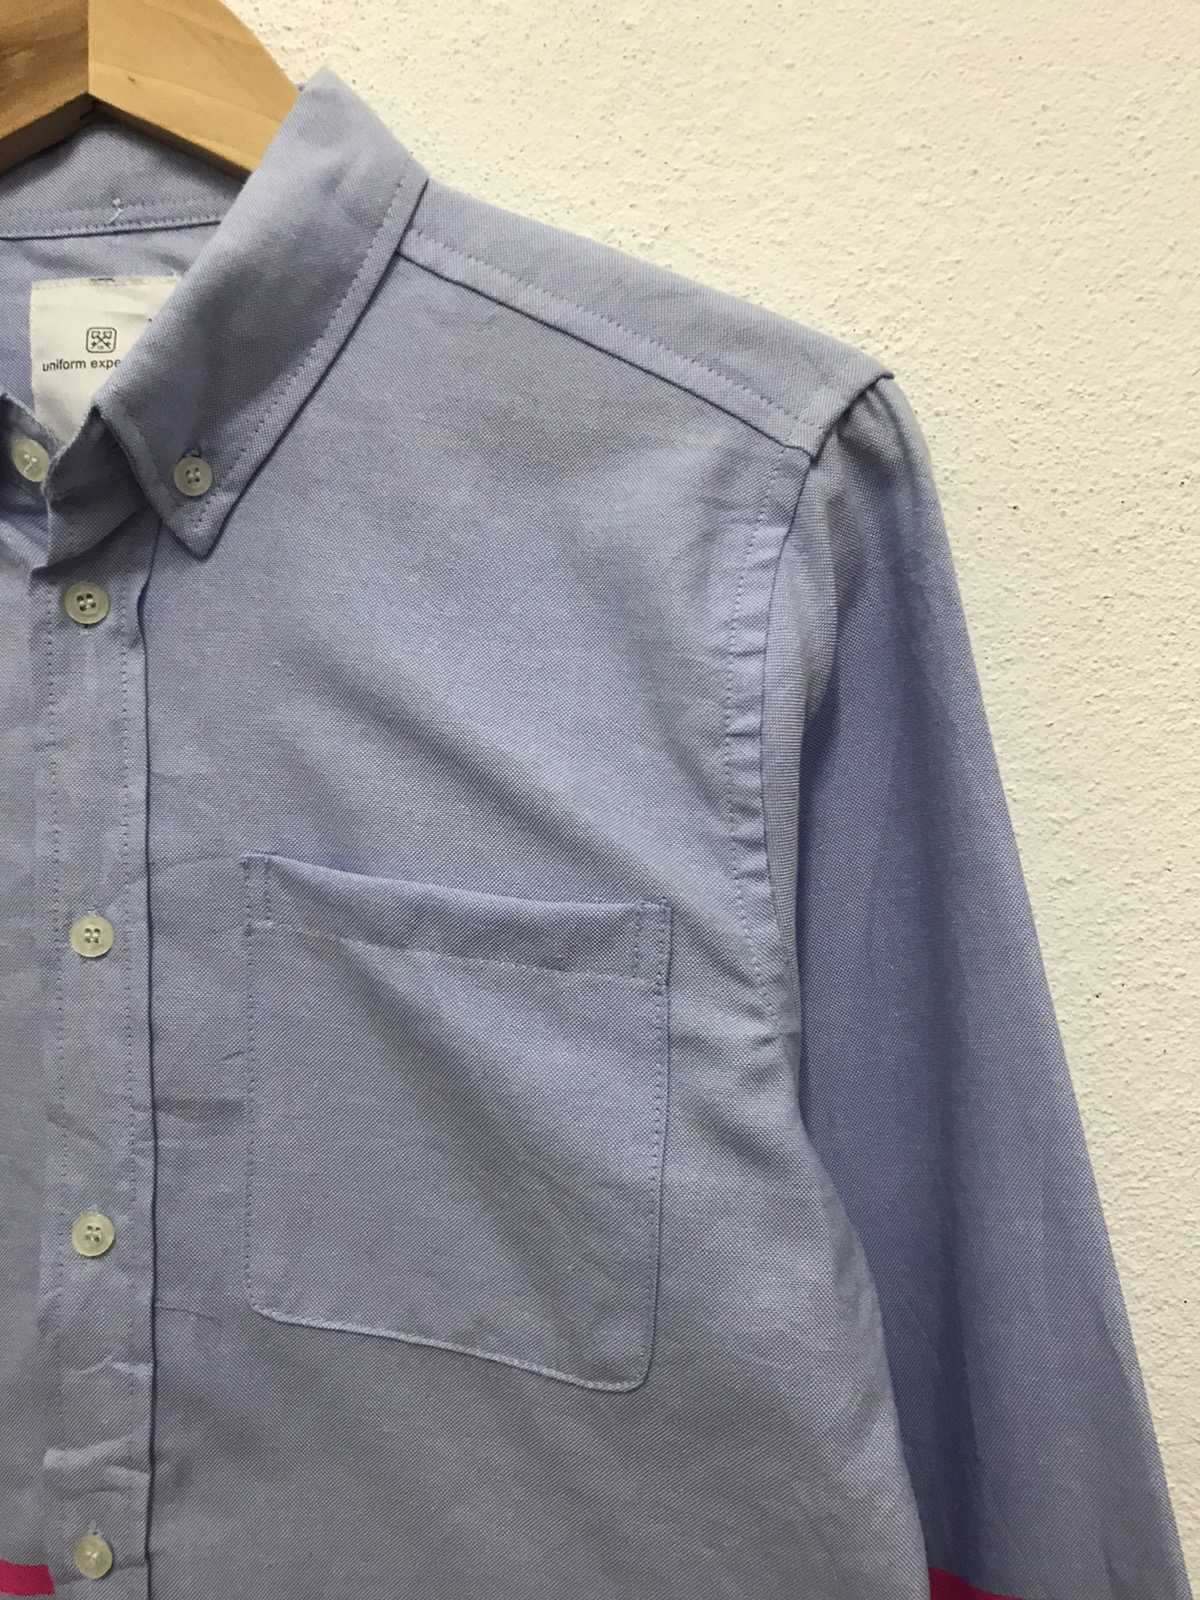 Uniform Experiment button up shirts - 4